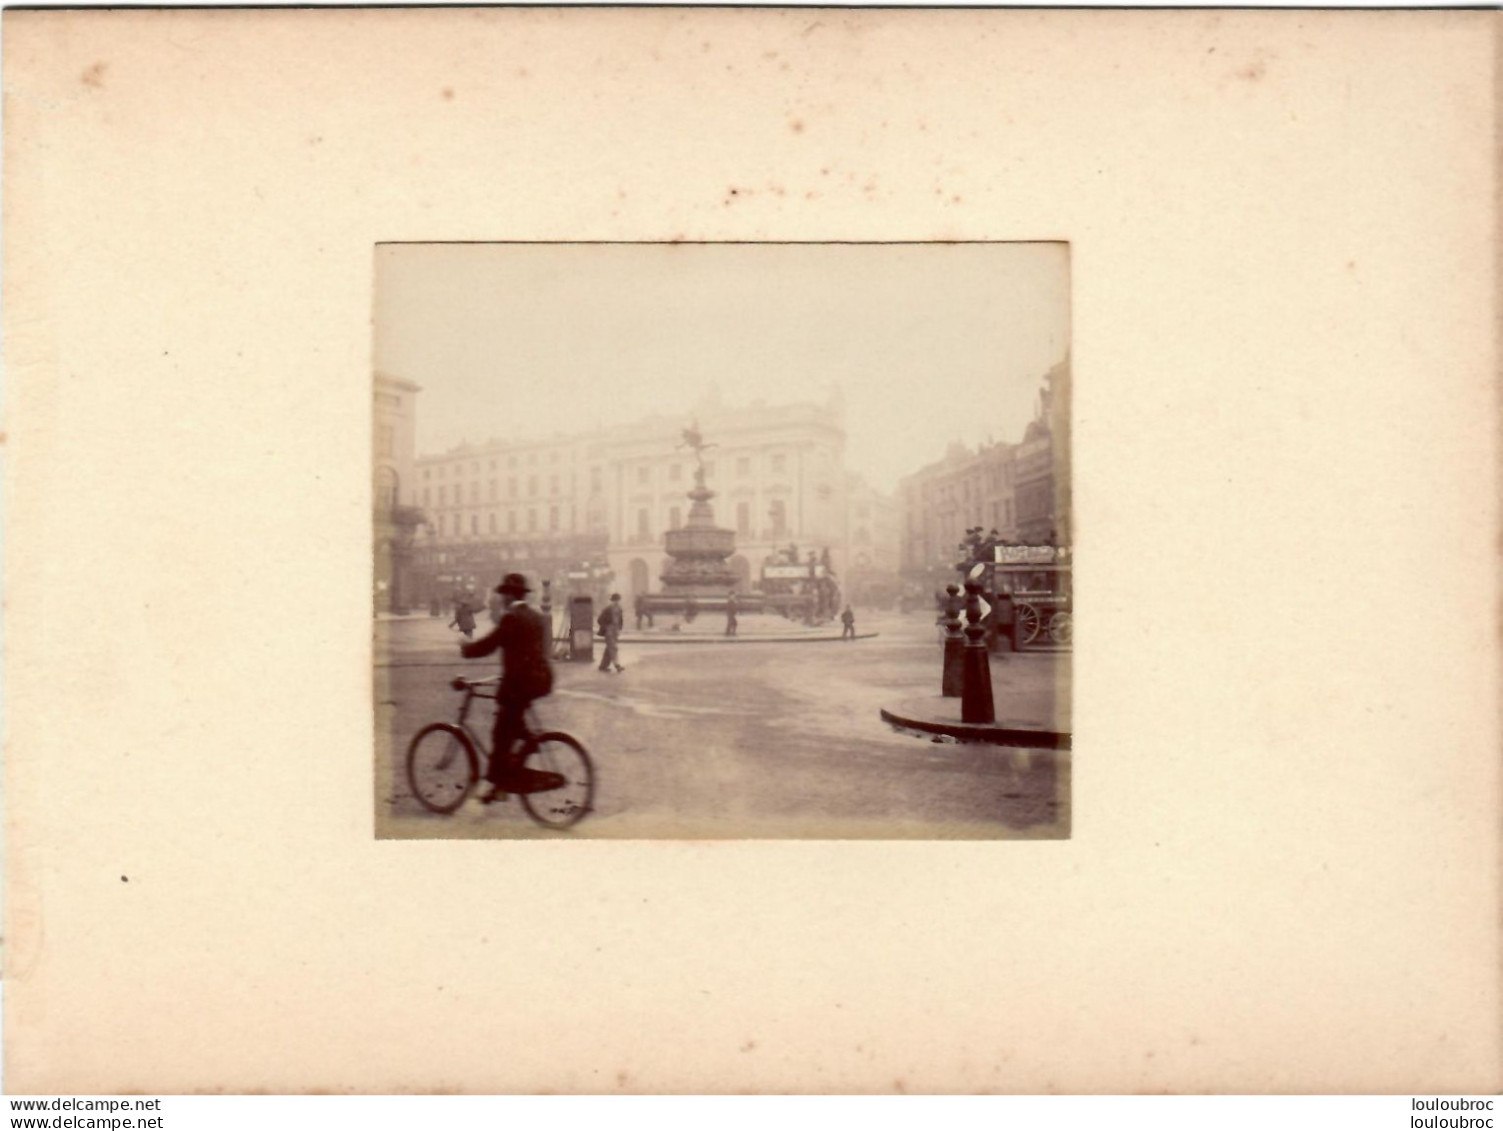 LONDRES MONUMENT DANS REGENT STREET FIN 19e PHOTO ORIGINALE DE 8.50X7 CM COLLEE SUR CARTON 18X13CM - Old (before 1900)